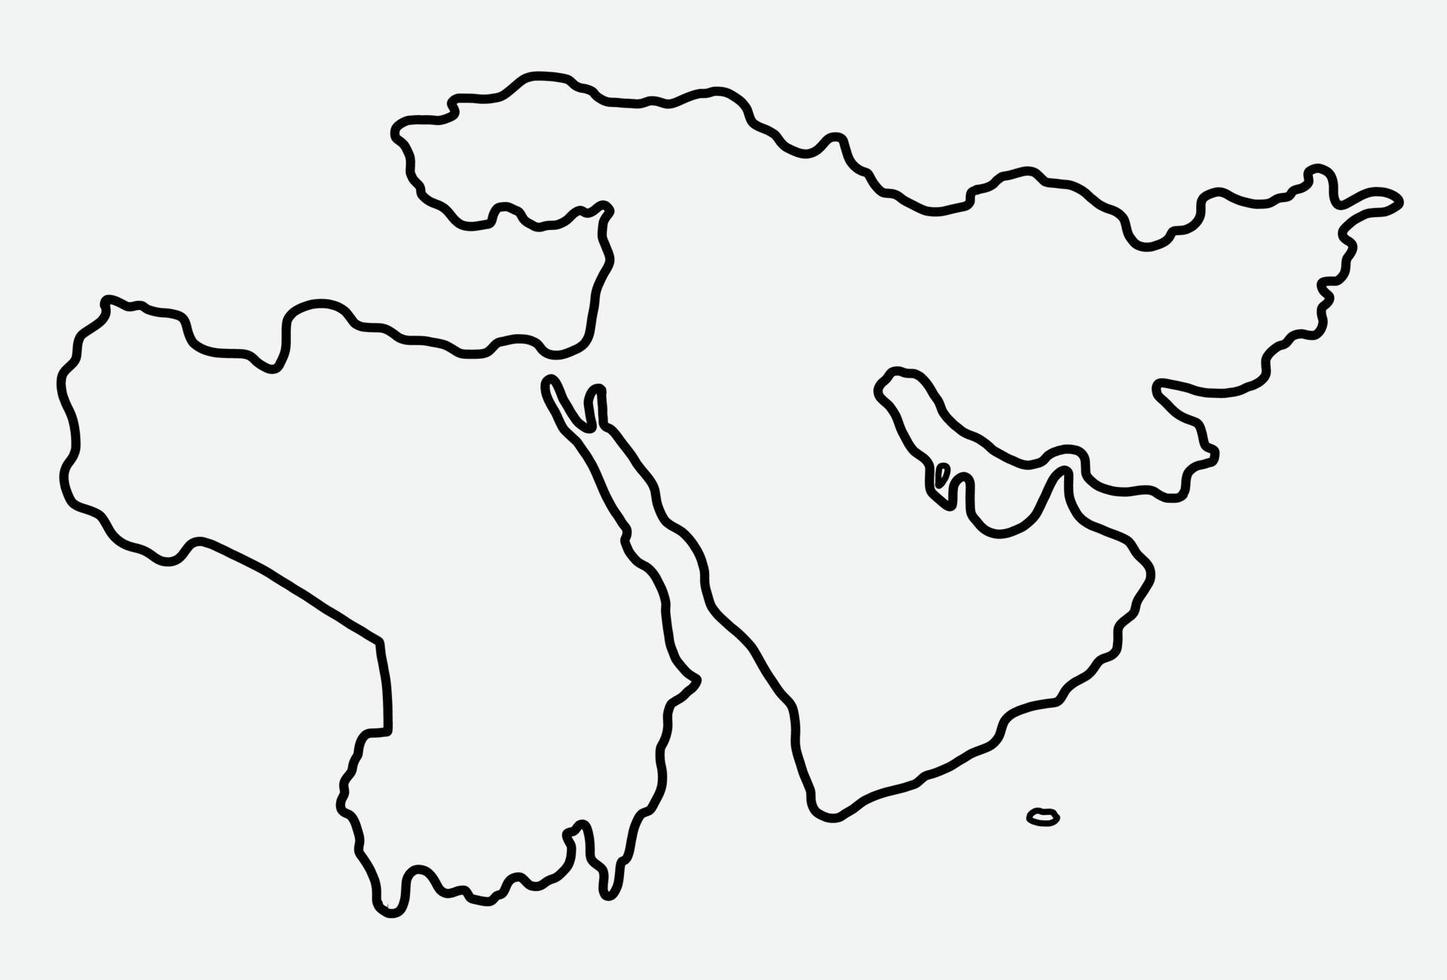 dibujo a mano alzada del mapa de oriente medio. vector